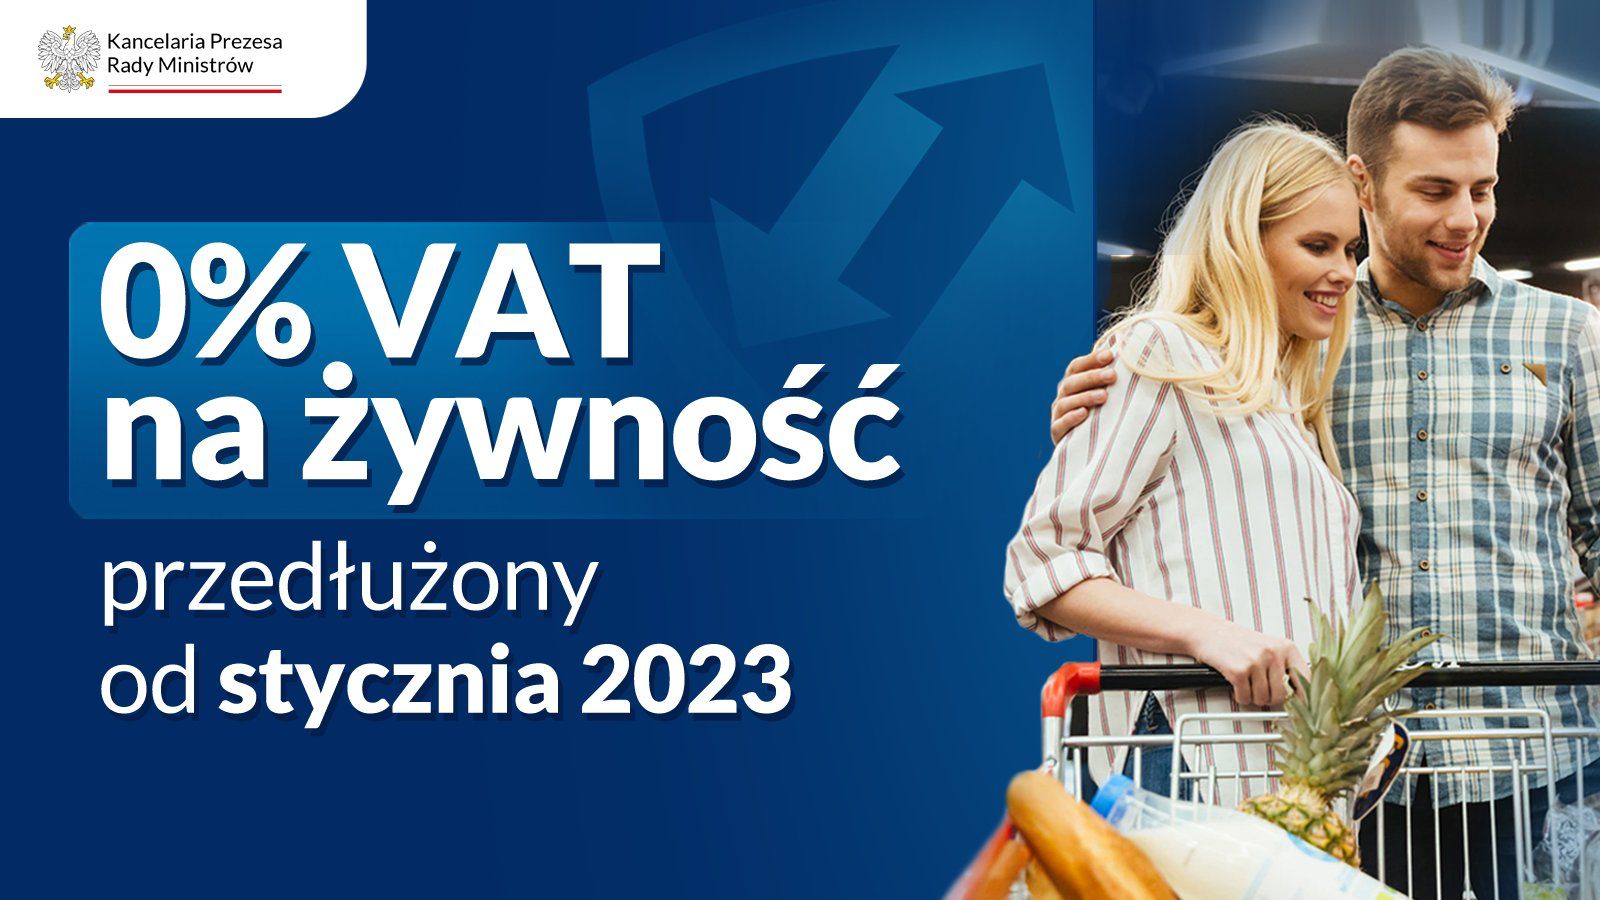 Rząd Prawa i Sprawiedliwości podejmuje szereg działań, które w dobie globalnego kryzysu wspierają polskie rodziny. Zgodnie z zapowiedzią premiera Mateusza Morawieckiego przedłużono 0 % VAT na żywność.